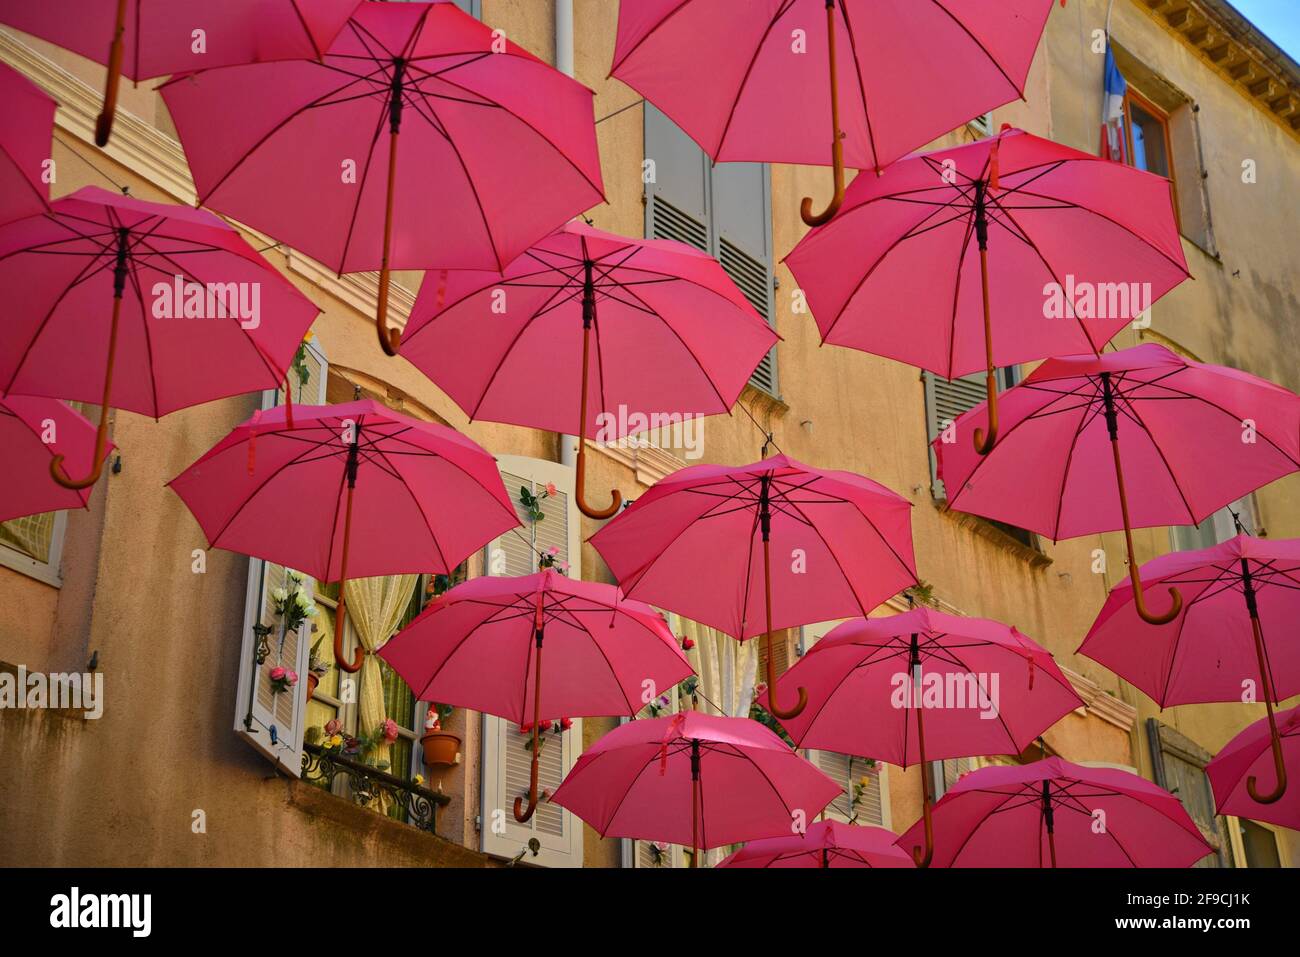 Aufgehängte rosa Regenschirme im historischen Zentrum von Grasse,  anlässlich der Rose Expo in Provence-Alpes-Côte d'Azur, Frankreich  Stockfotografie - Alamy